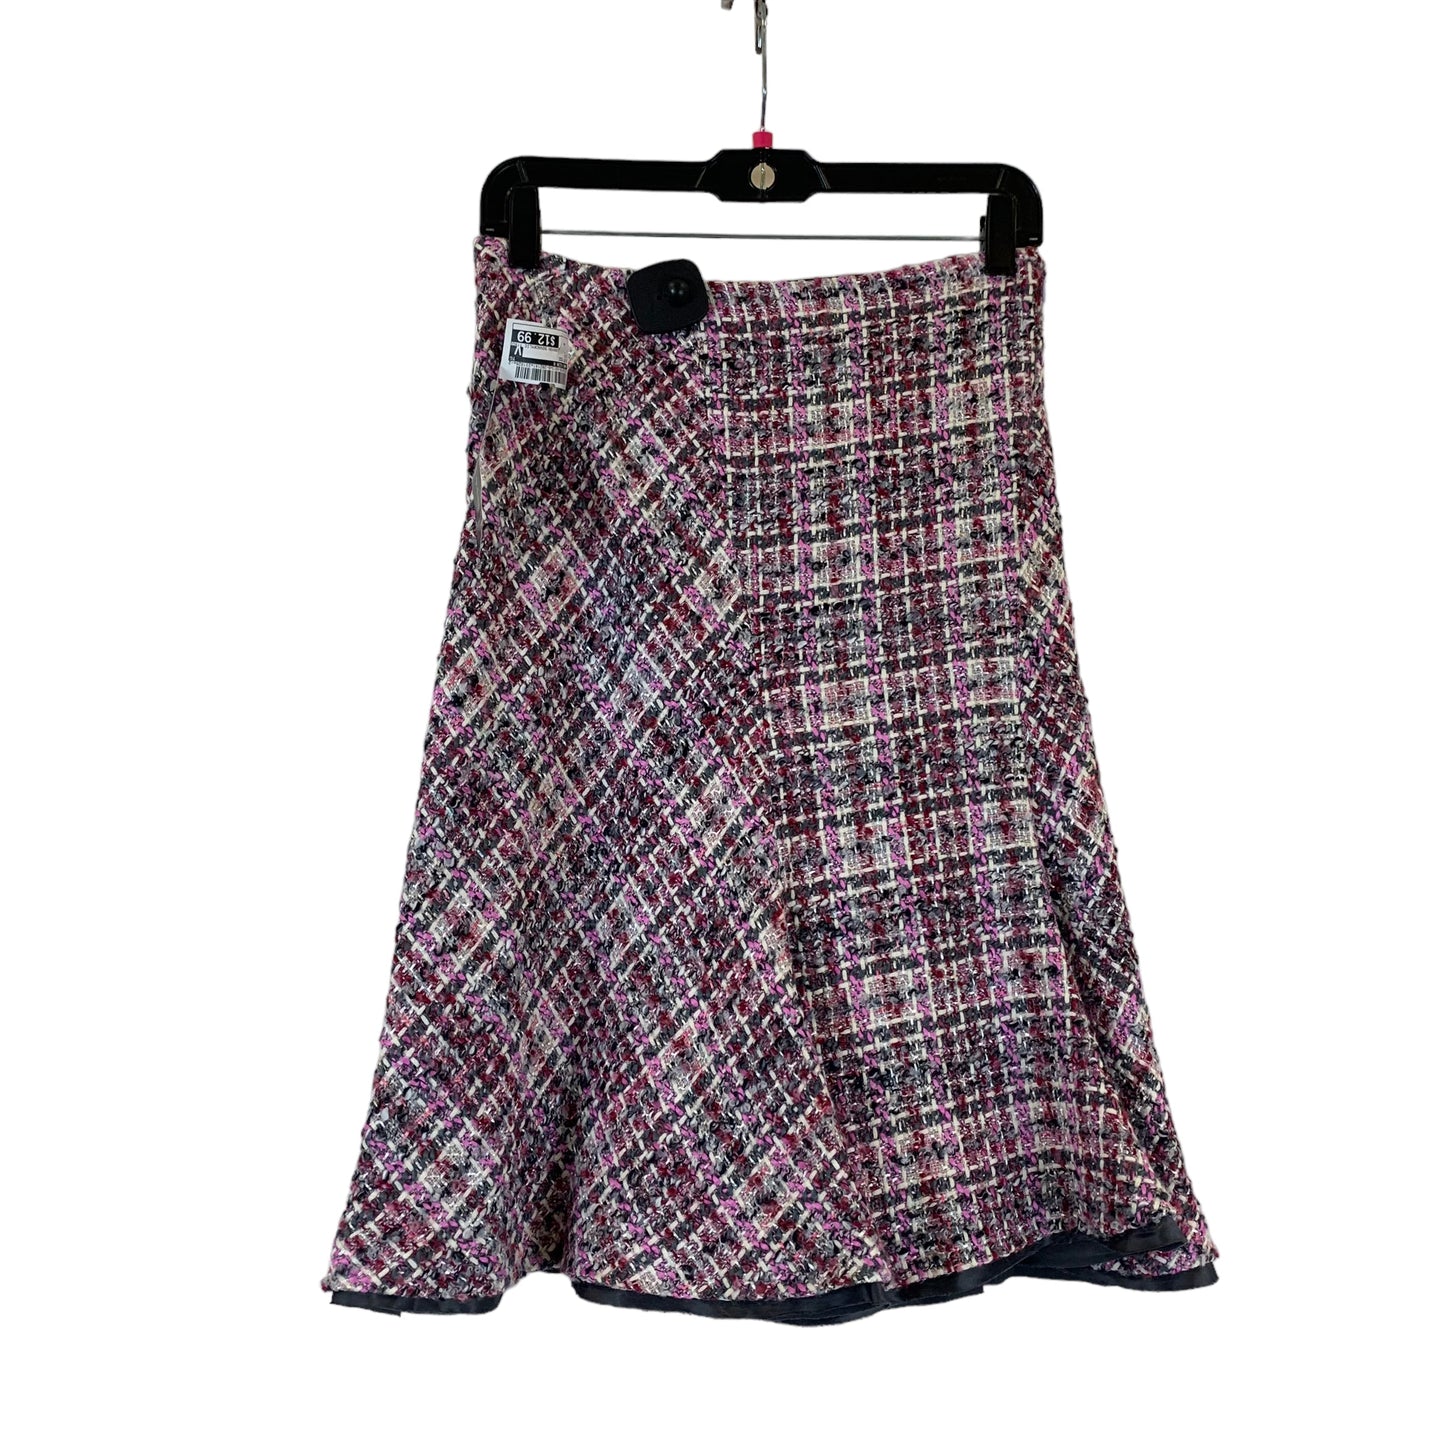 Skirt Midi By Anne Klein Size: Xs